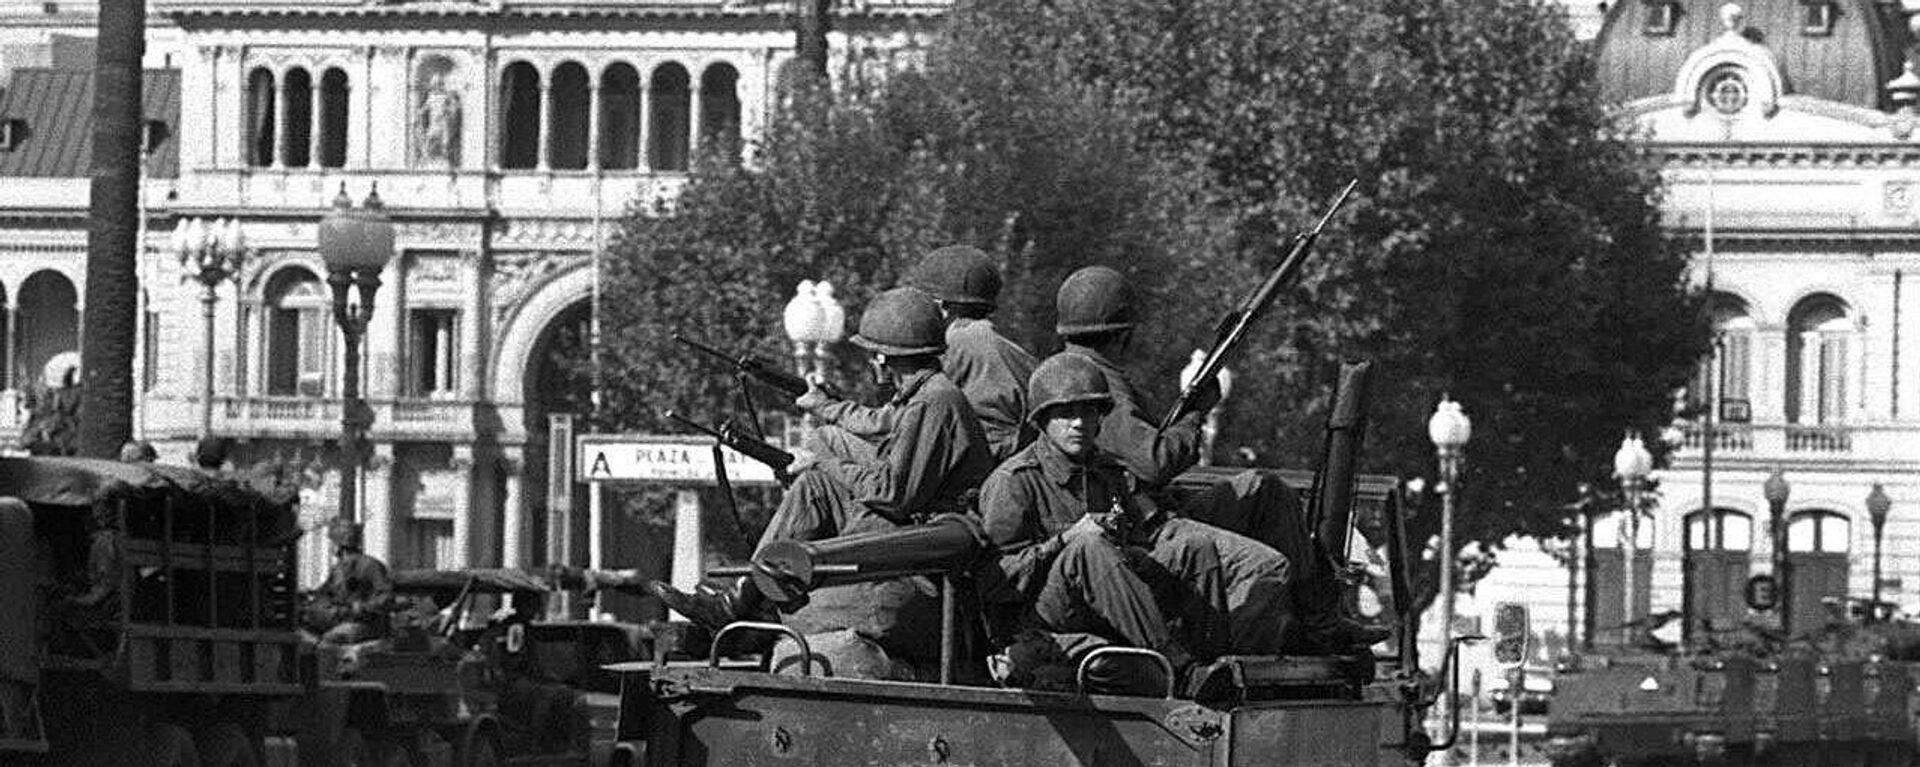 Soldados del ejército patrullan la Plaza de Mayo de Buenos Aires el 24 de marzo de 1976 - Sputnik Mundo, 1920, 05.11.2021